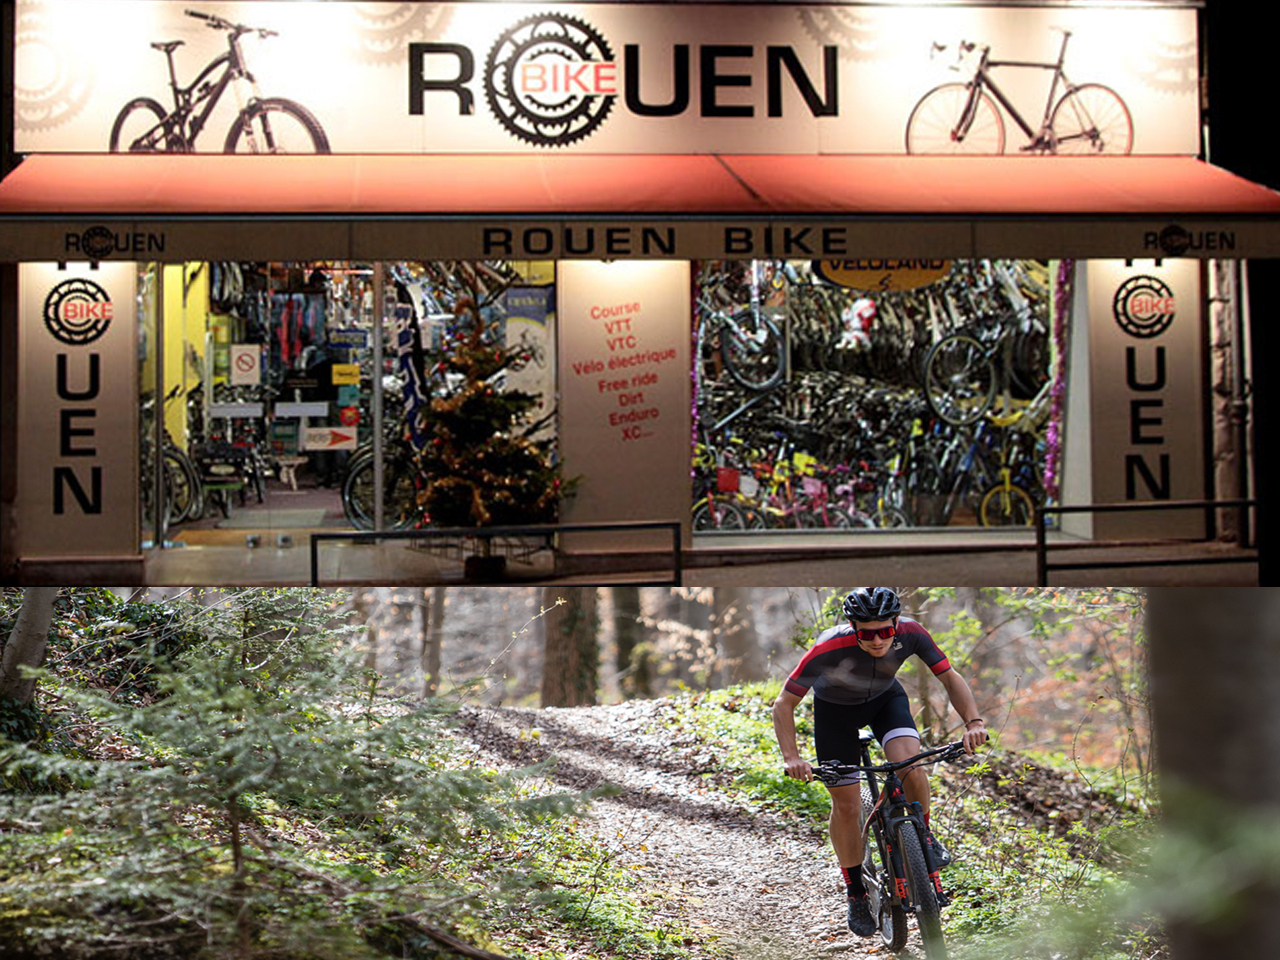  Rouen Bike magasin de vélo à Rouen 